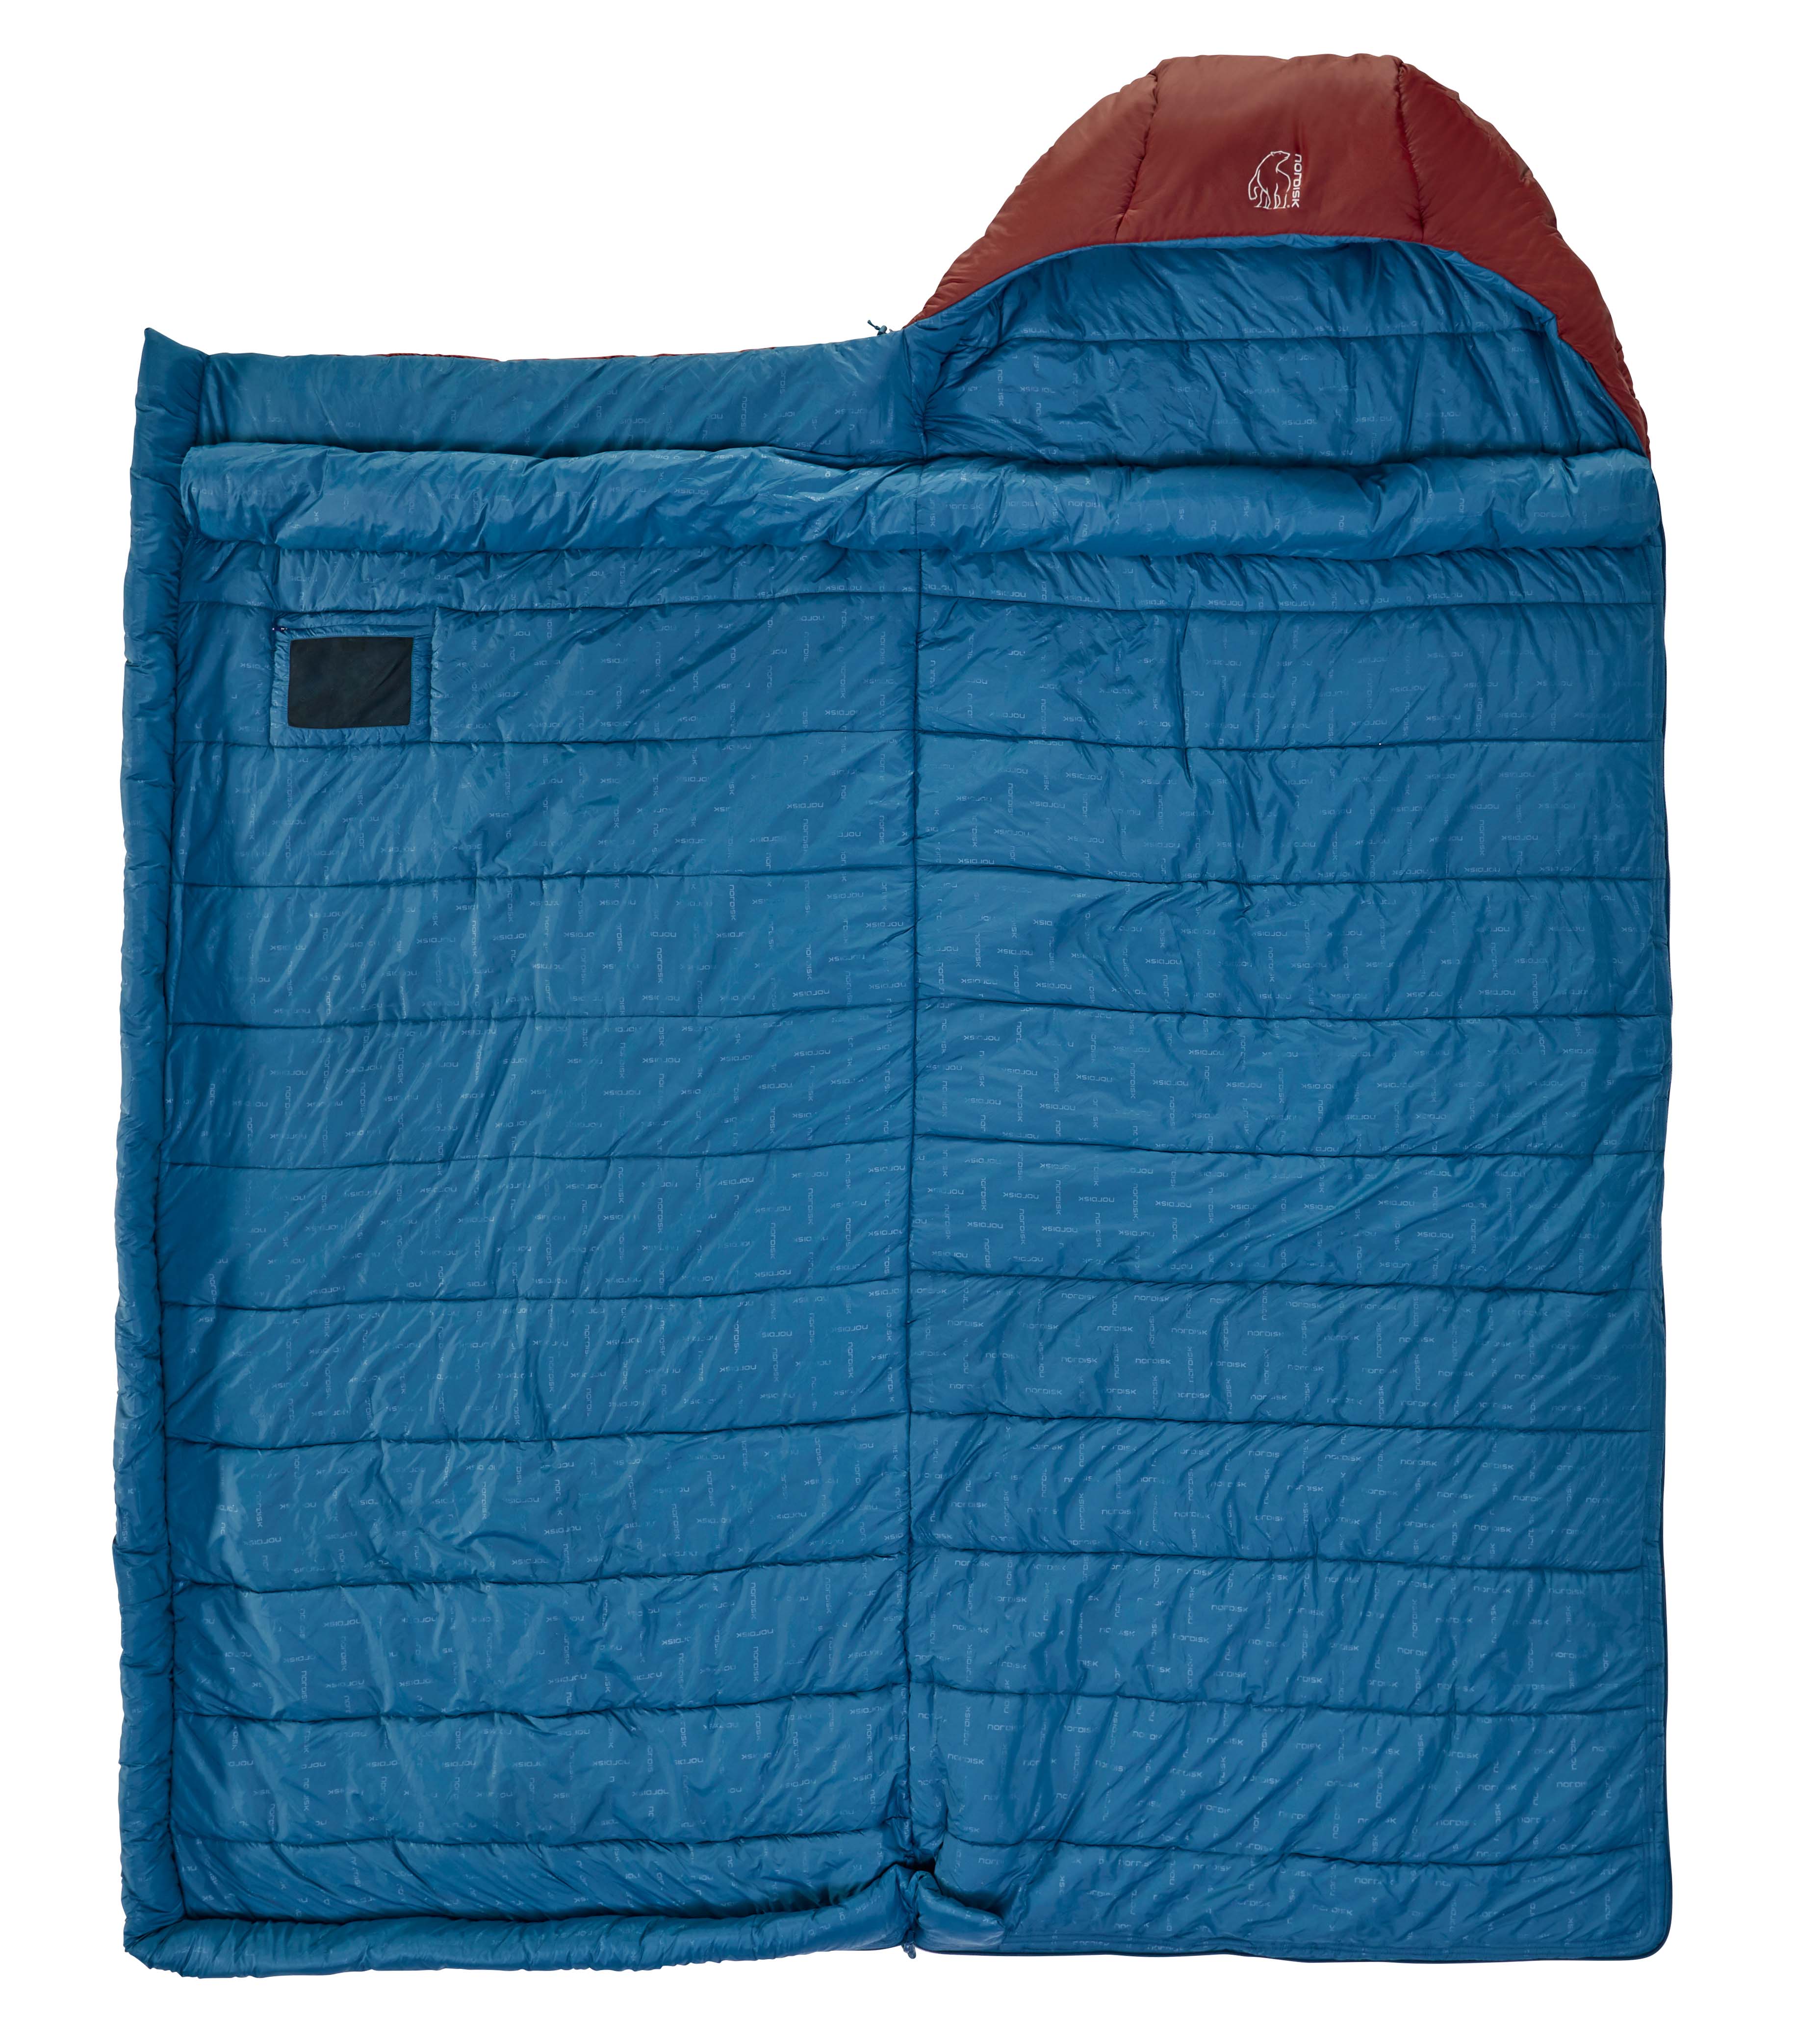 NORDISK Puk -2 Blanket - Kunstfaserschlafsack